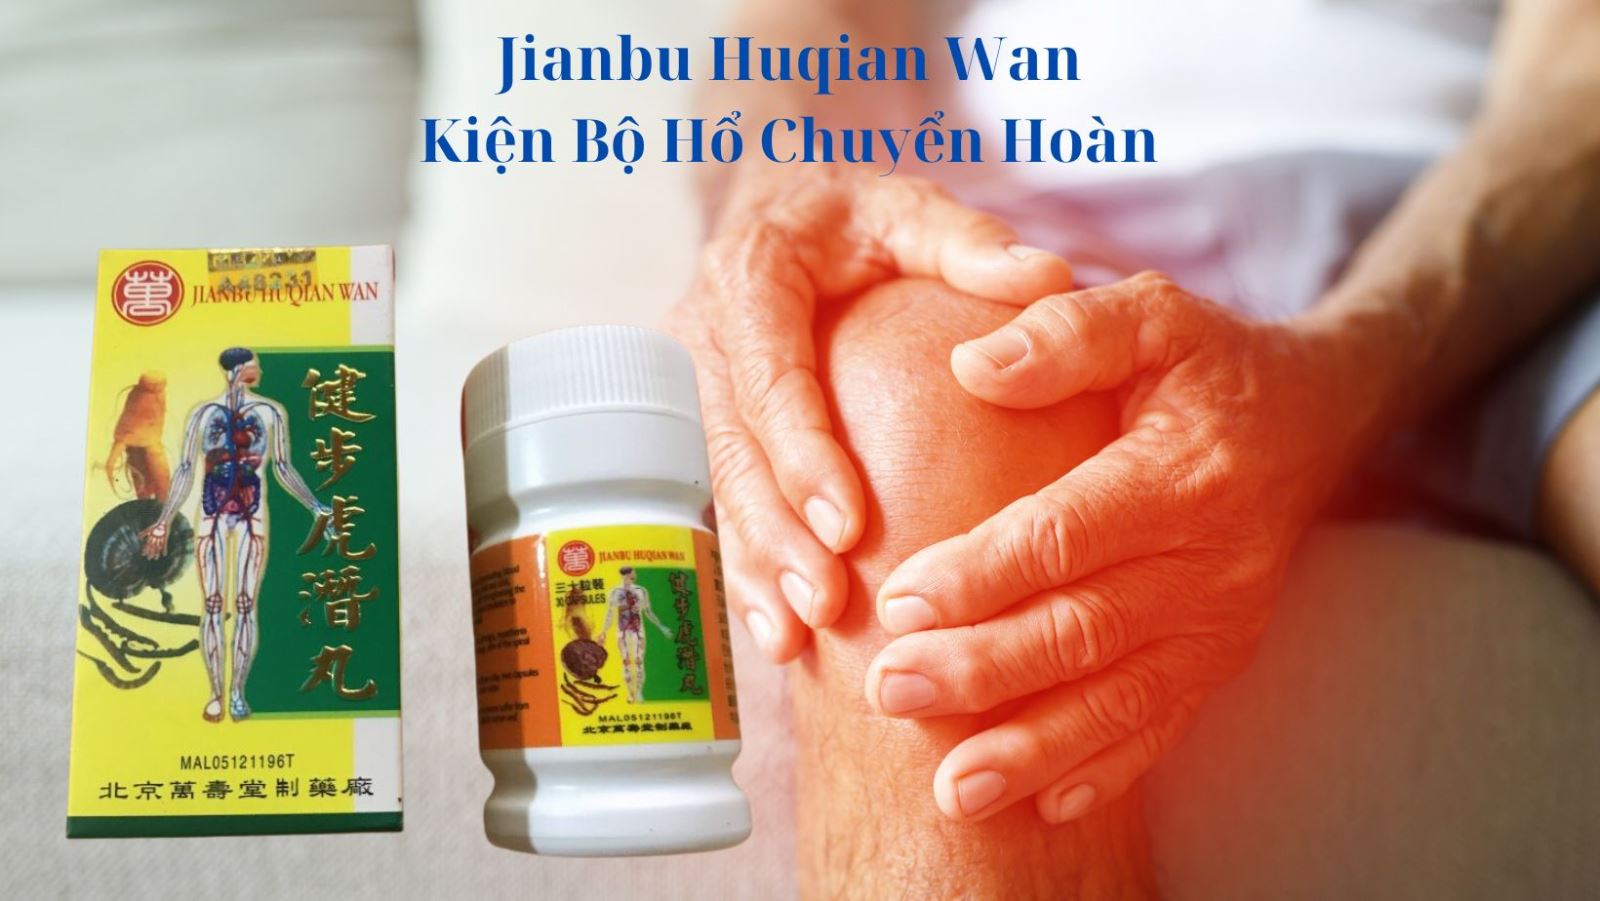 Jianbu Huqian Wan – Kiện Bộ Hổ Chuyển Hoàn giúp mạnh gân cốt, trừ phong hàn